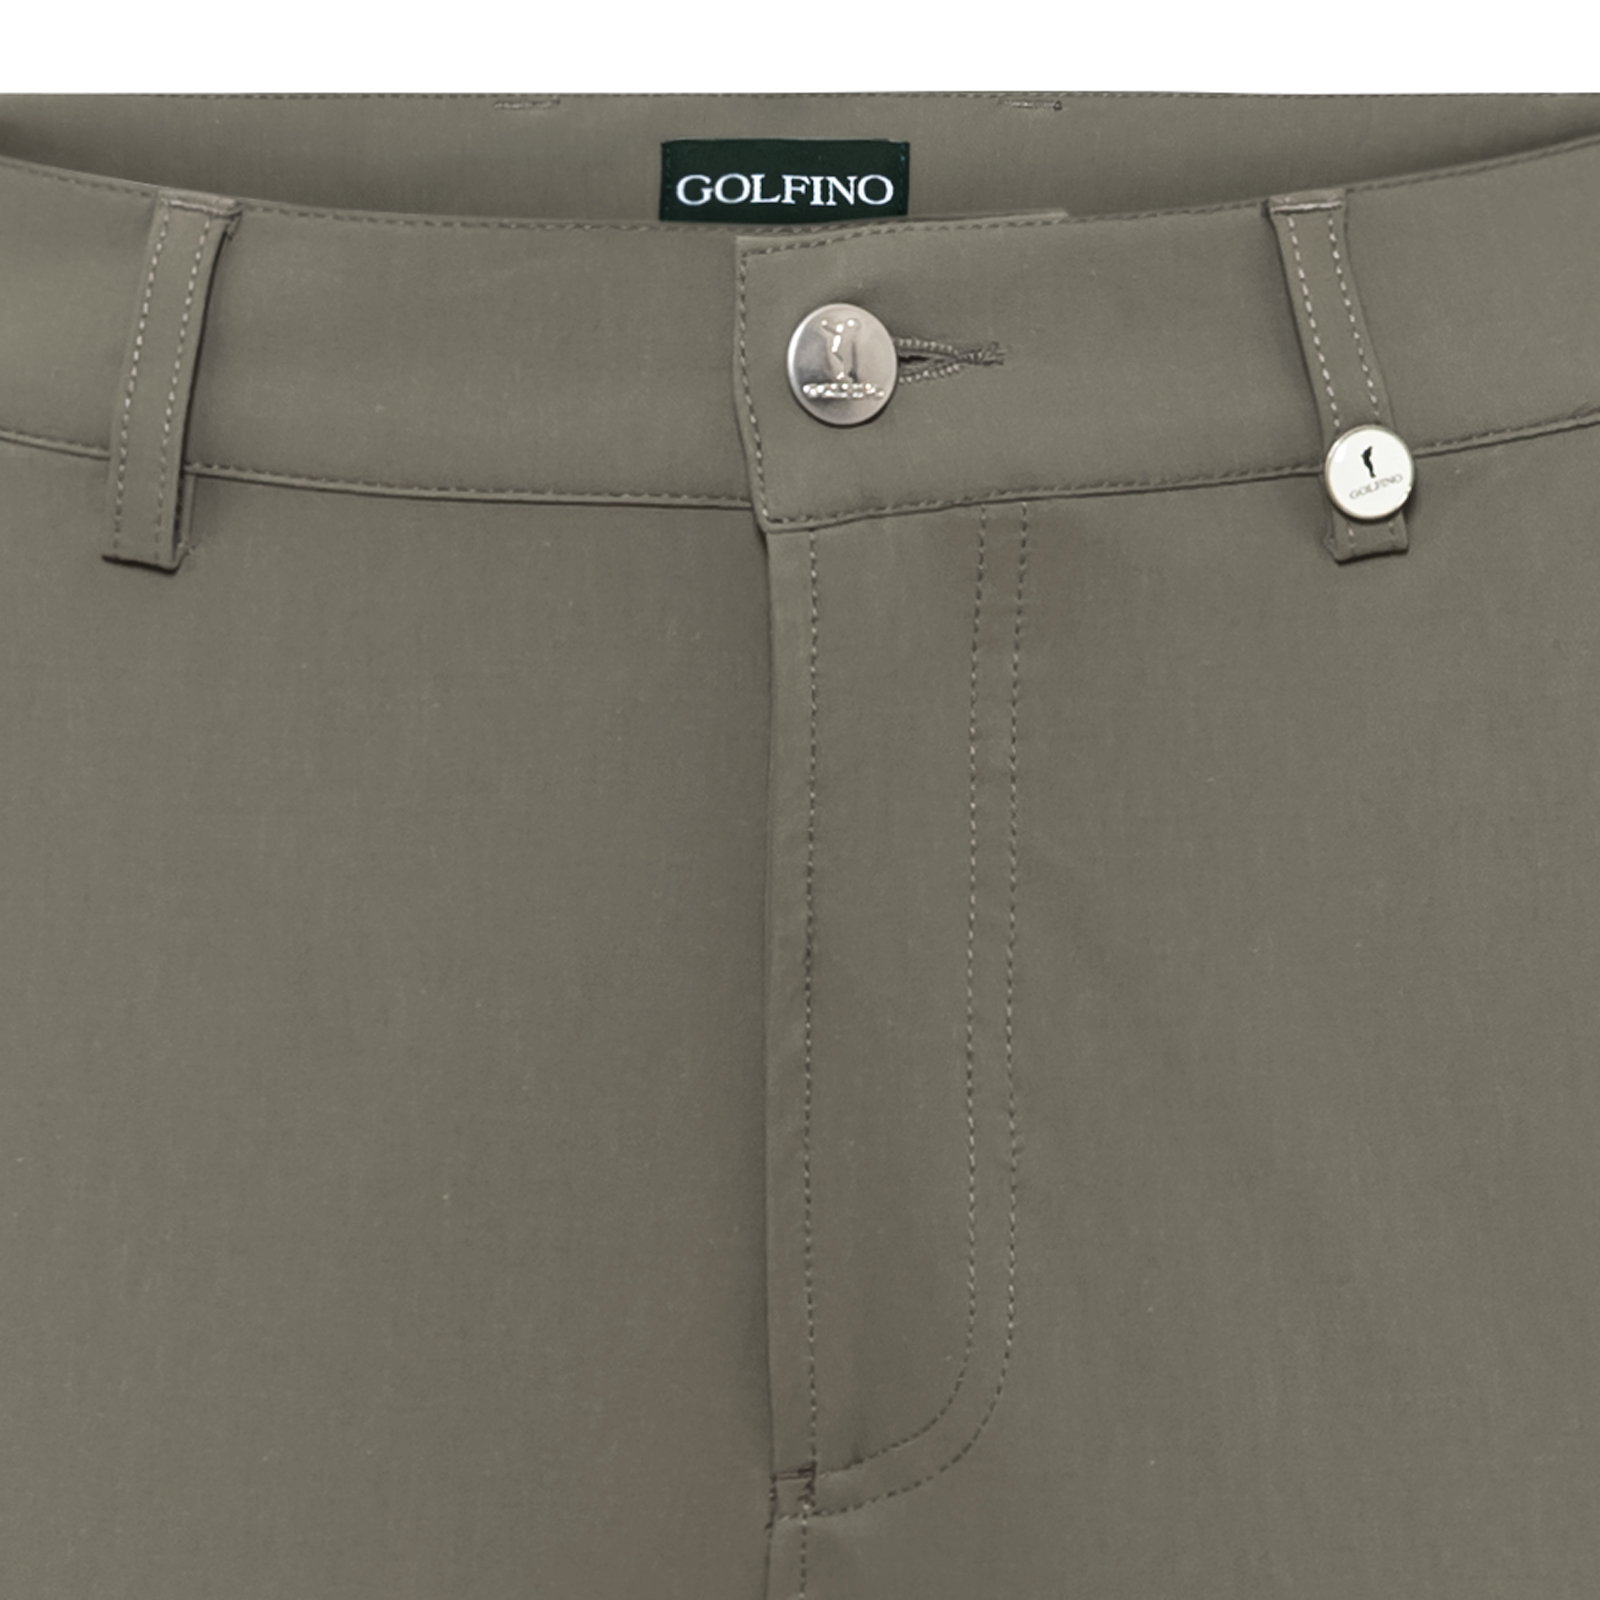 Cómodos pantalones elásticos de golf con Premium Techno Stretch para mujer